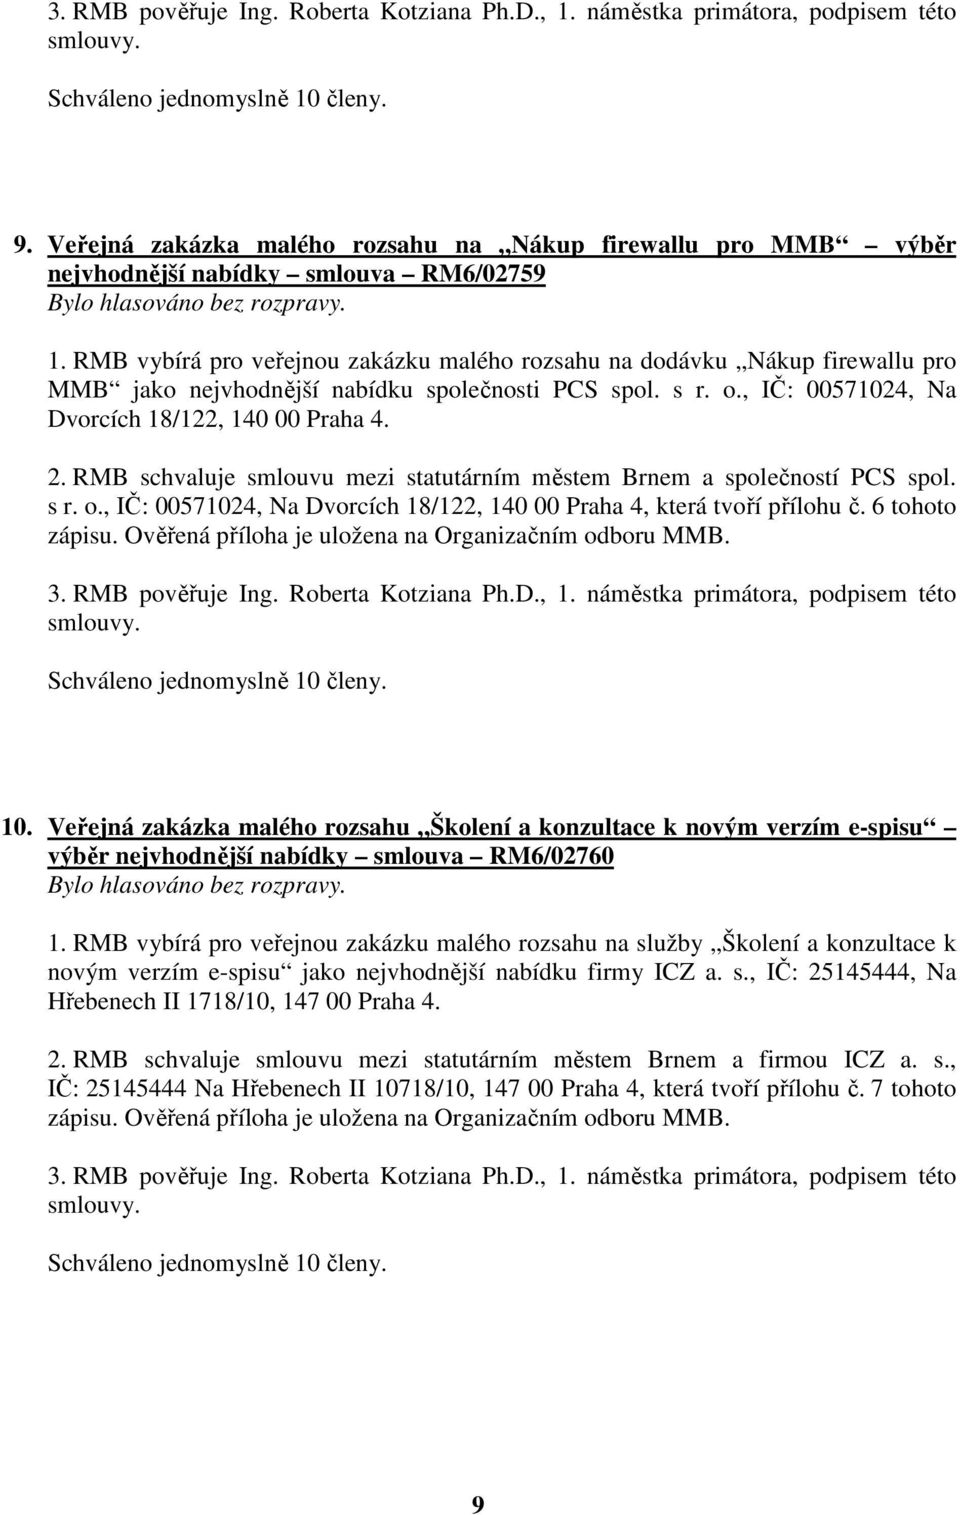 RMB schvaluje smlouvu mezi statutárním městem Brnem a společností PCS spol. s r. o., IČ: 00571024, Na Dvorcích 18/122, 140 00 Praha 4, která tvoří přílohu č. 6 tohoto zápisu.